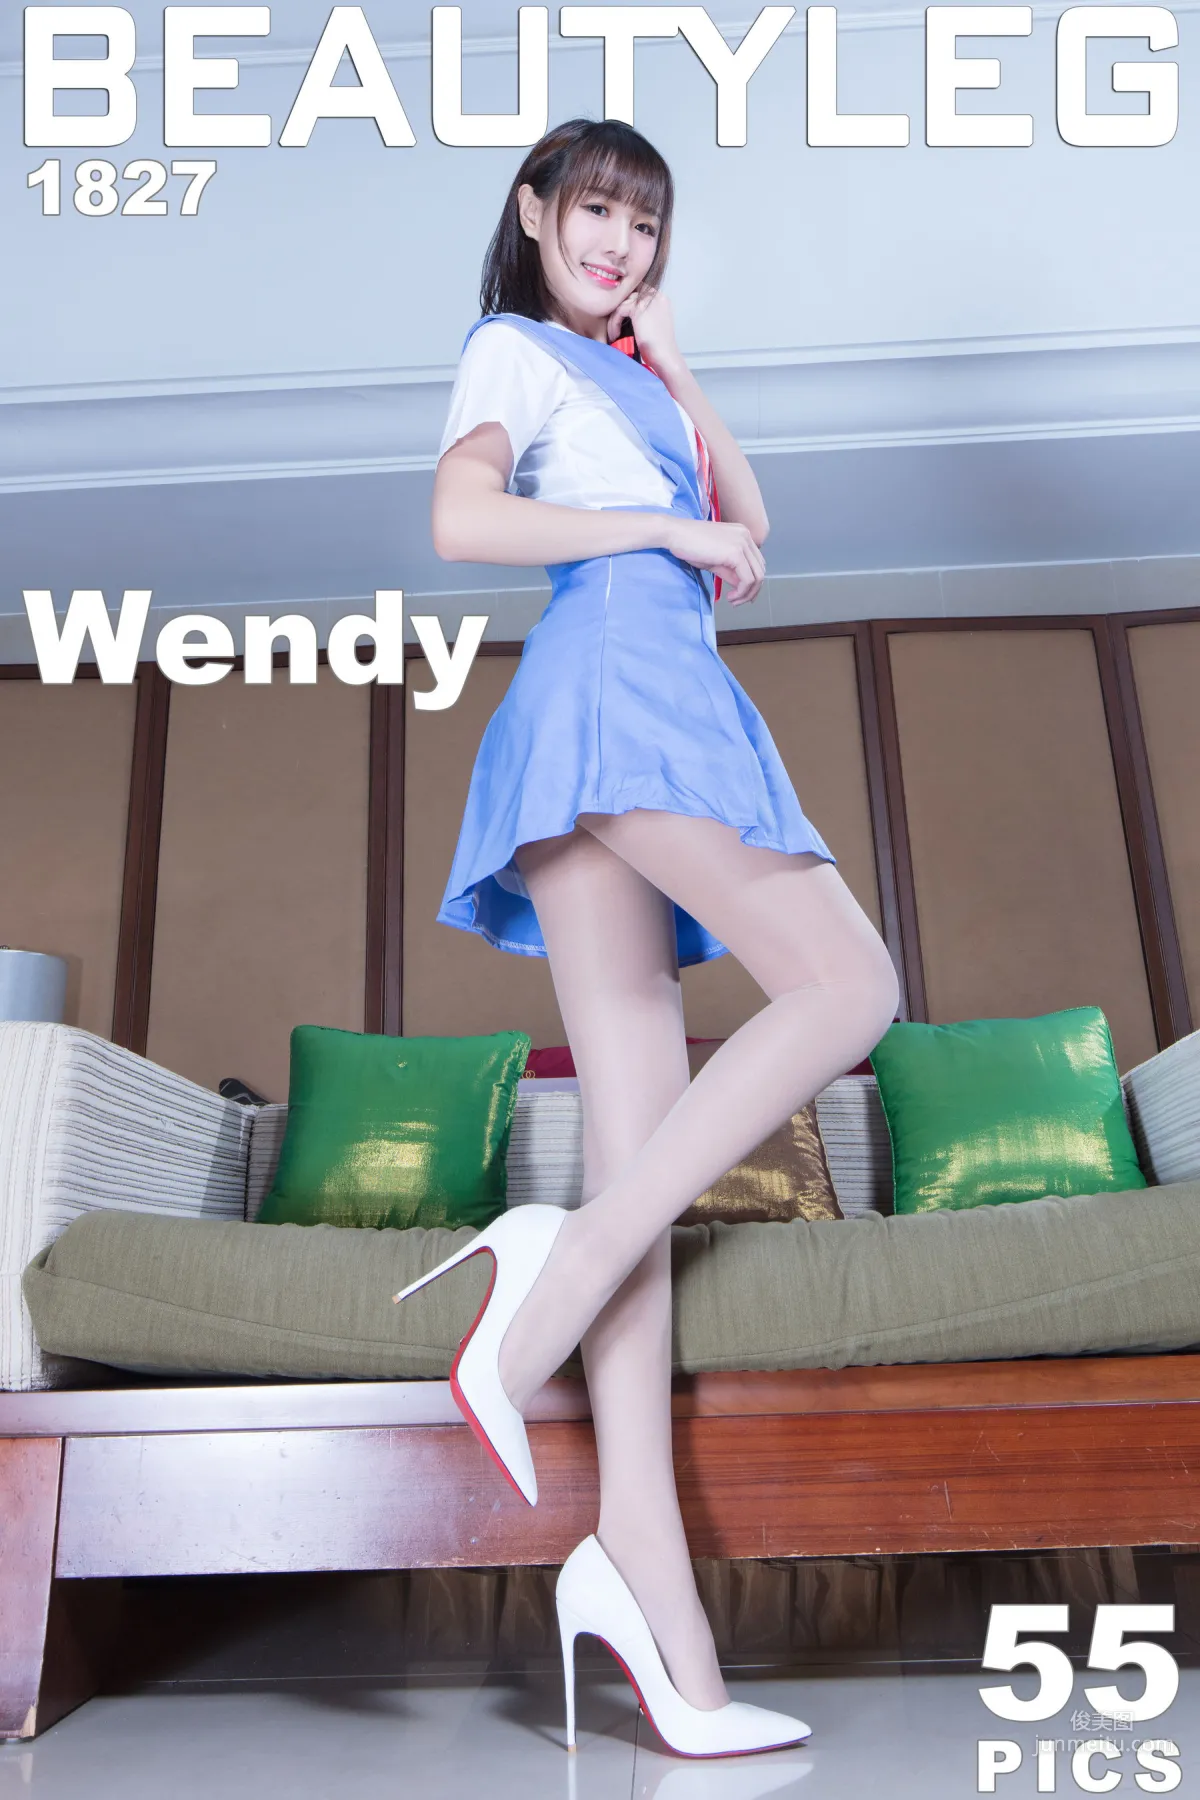 腿模Wendy《4组短裙制服美腿》 [Beautyleg] No.1827 1